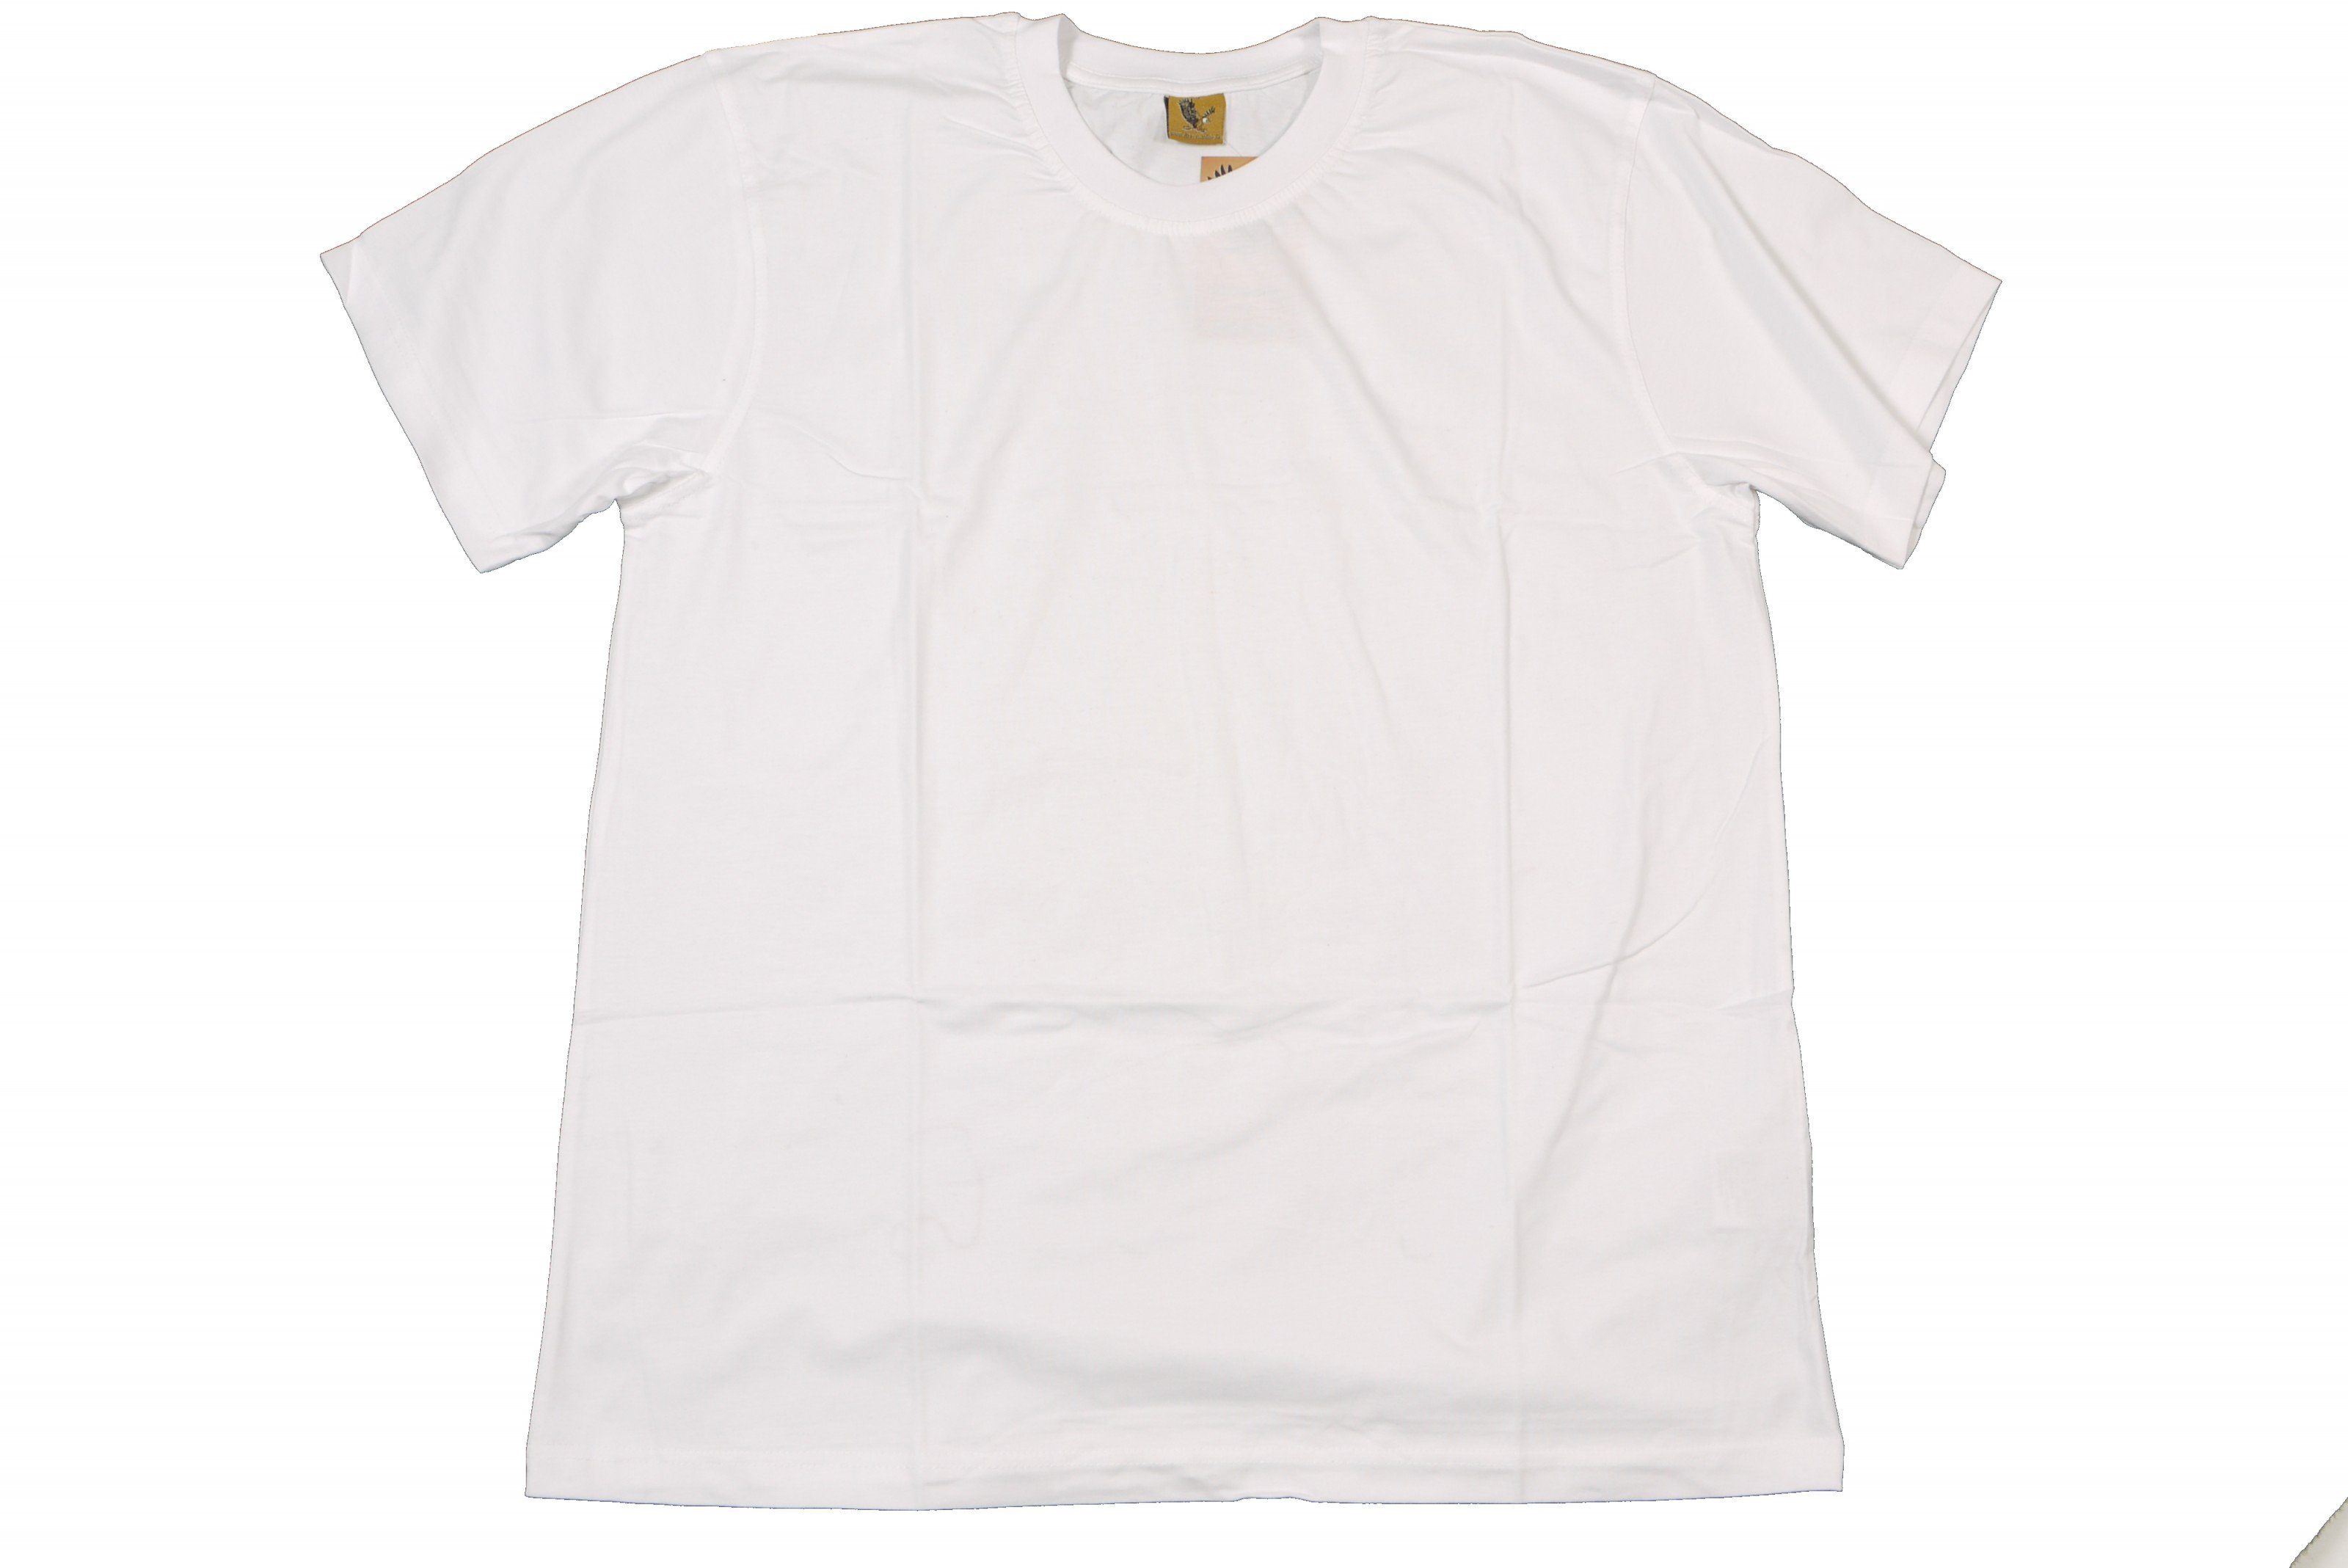 ABRAXAS Rundhalsshirt Rundhals T-Shirt von Abraxas in großen Größen bis 12XL, weiß